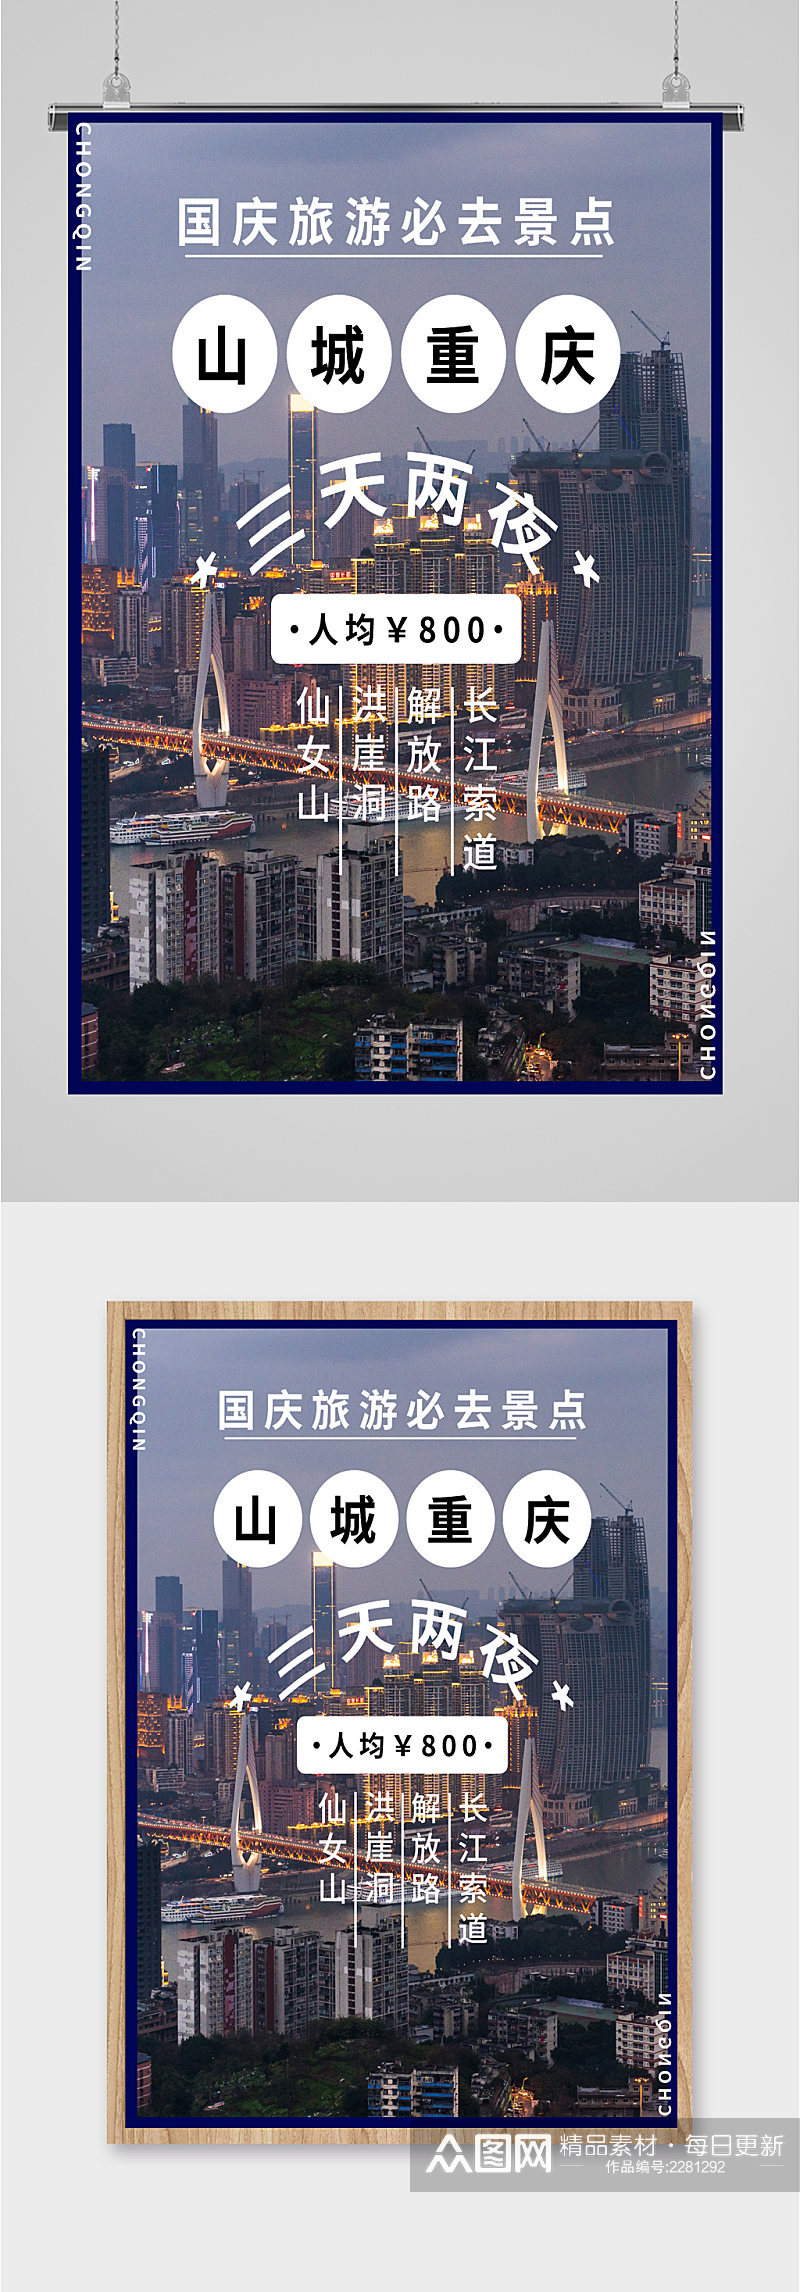 山城重庆旅游海报素材